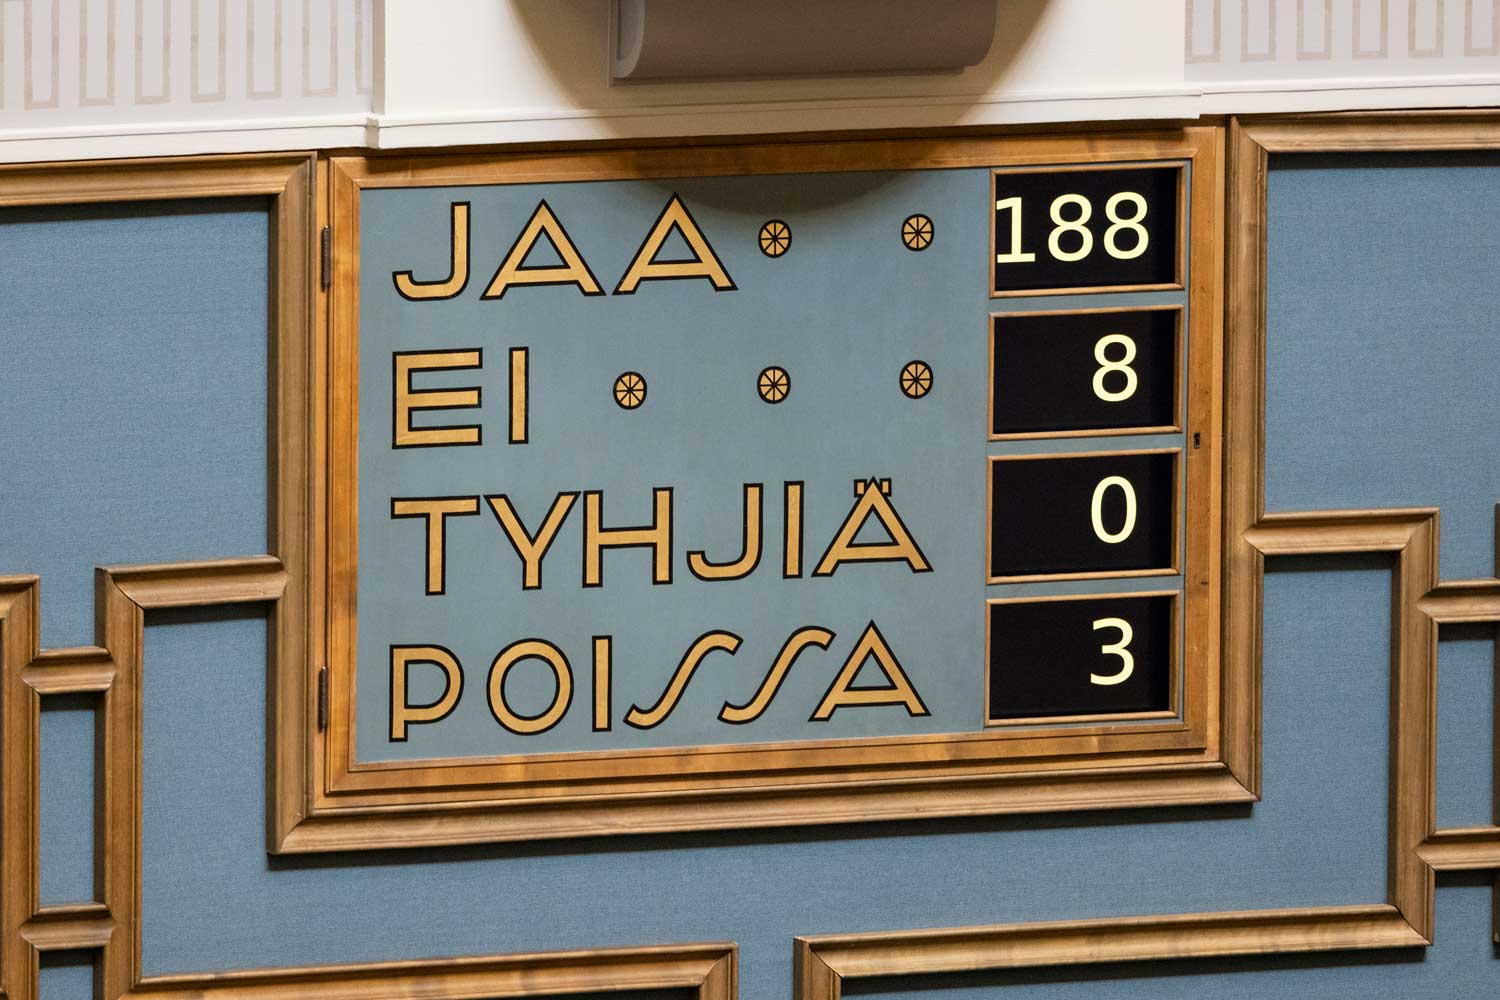 Kuva Eduskunnan istuntosalin tulostaulusta äänestyksen jälkeen: jaa 188, ei 8, tyhjiä 0, poissa 3.